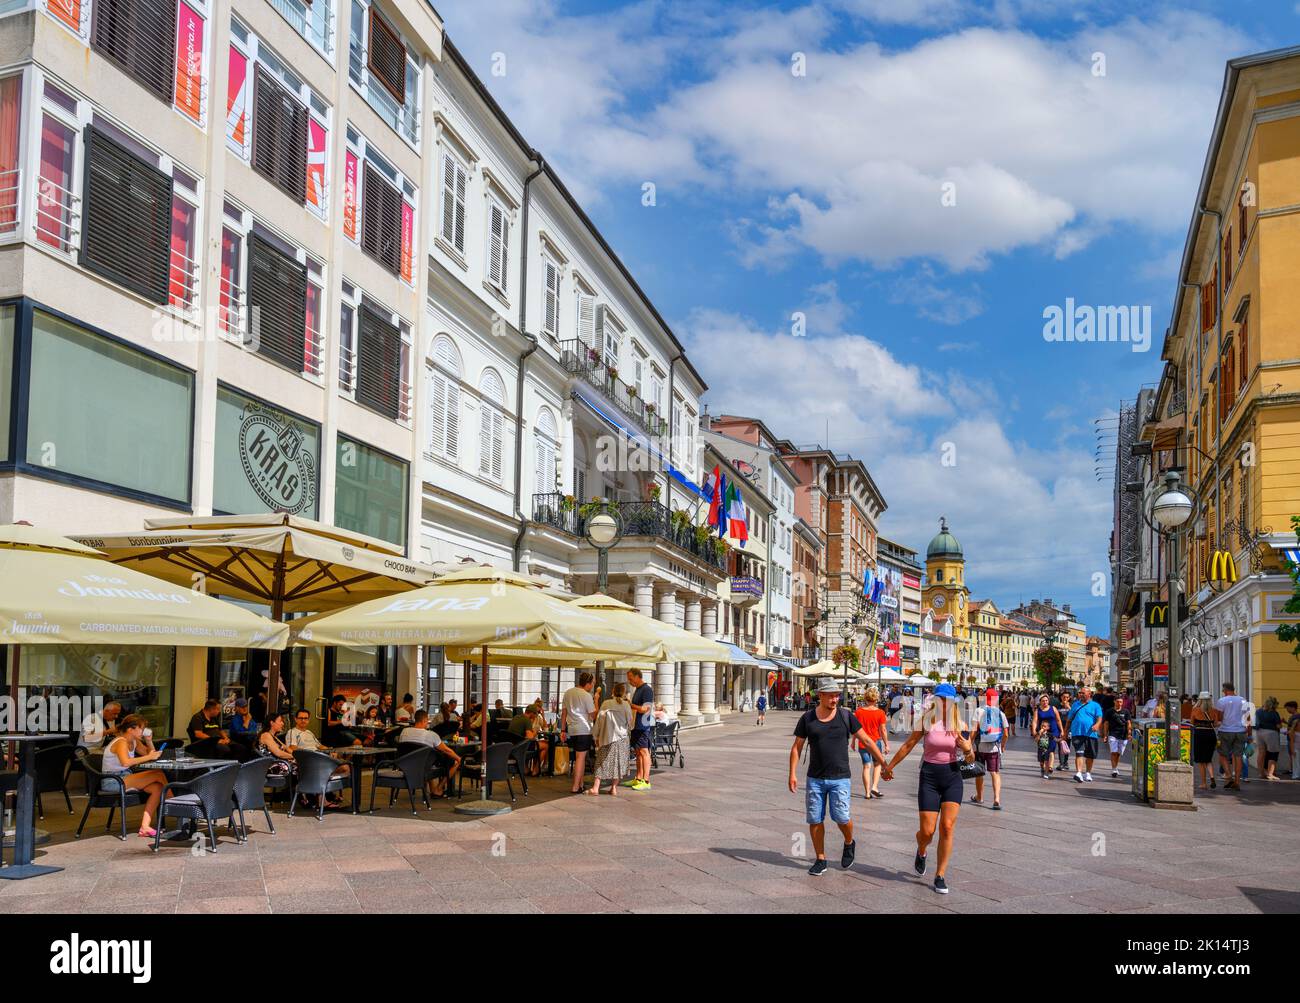 Cafe on the main street, Korzo, Rijeka, Croatia Stock Photo